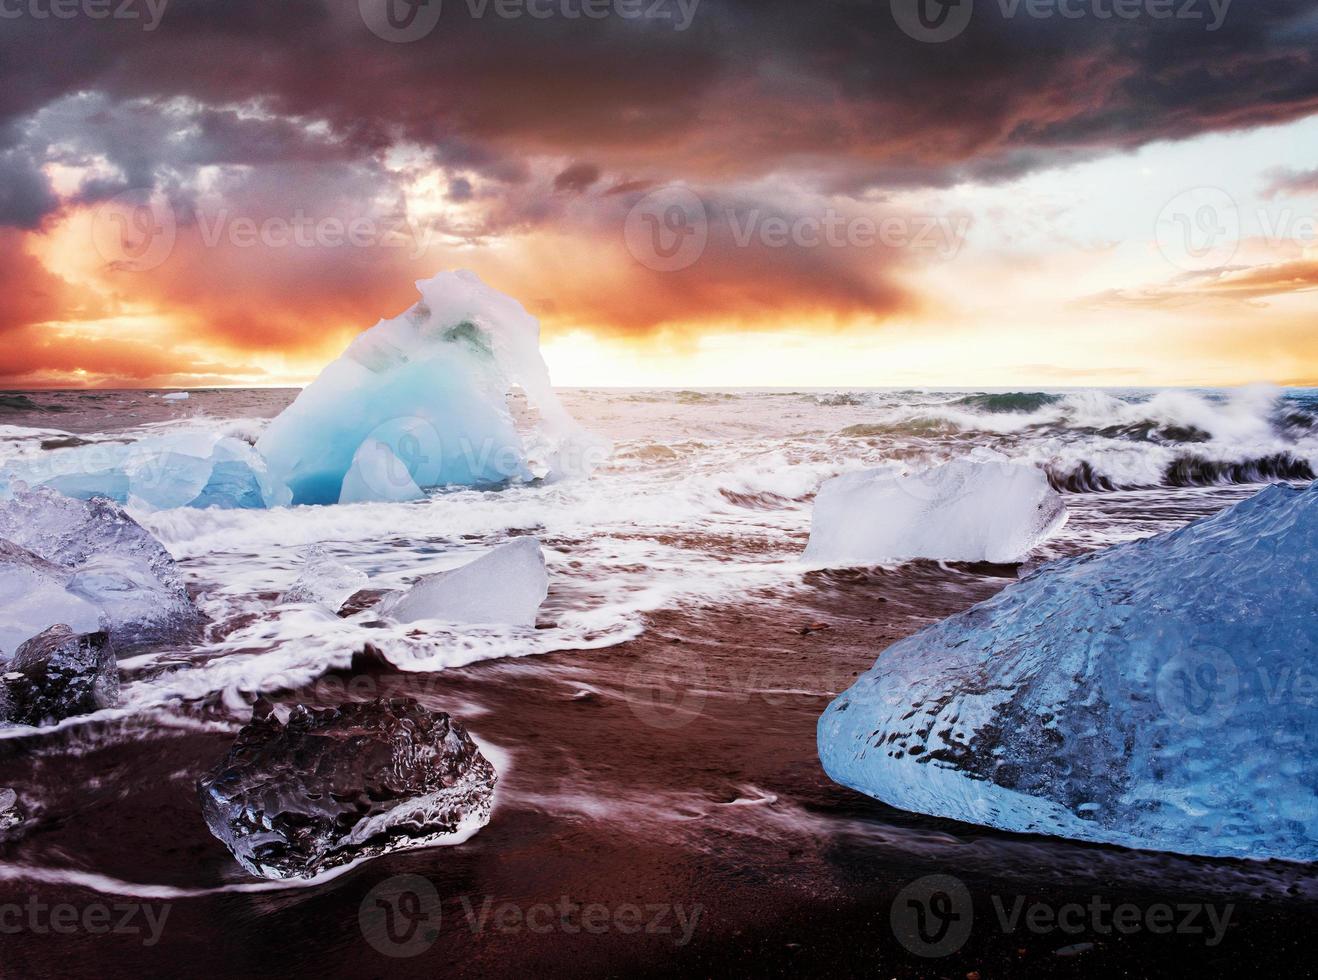 ijsland, jokulsarlon-lagune, prachtig koud landschapsbeeld van de ijslandse gletsjerlagunebaai foto